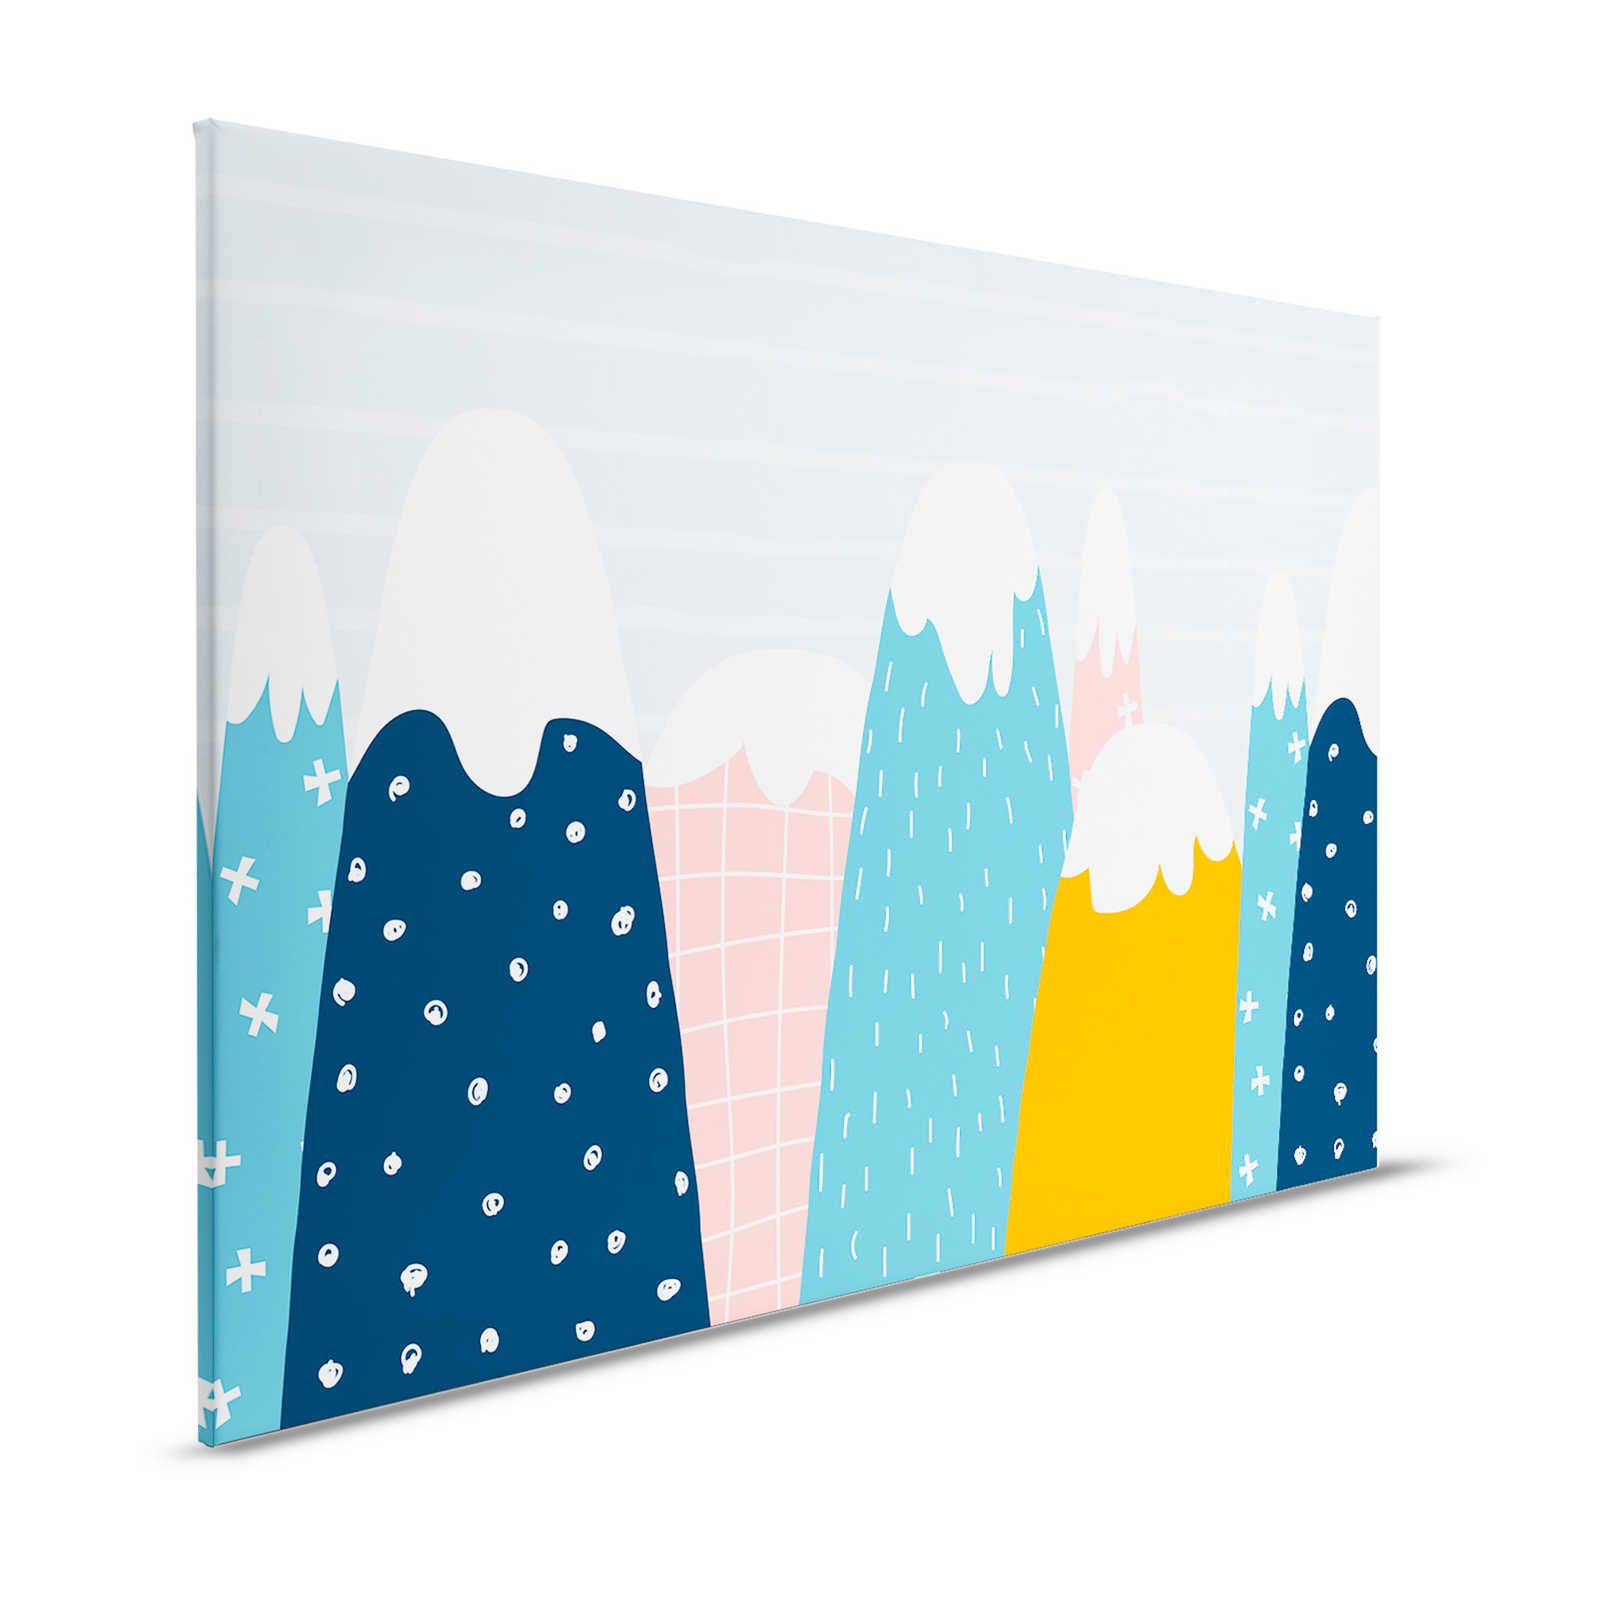 Leinwand mit verschneiten Hügeln im gemalten Stil – 120 cm x 80 cm
